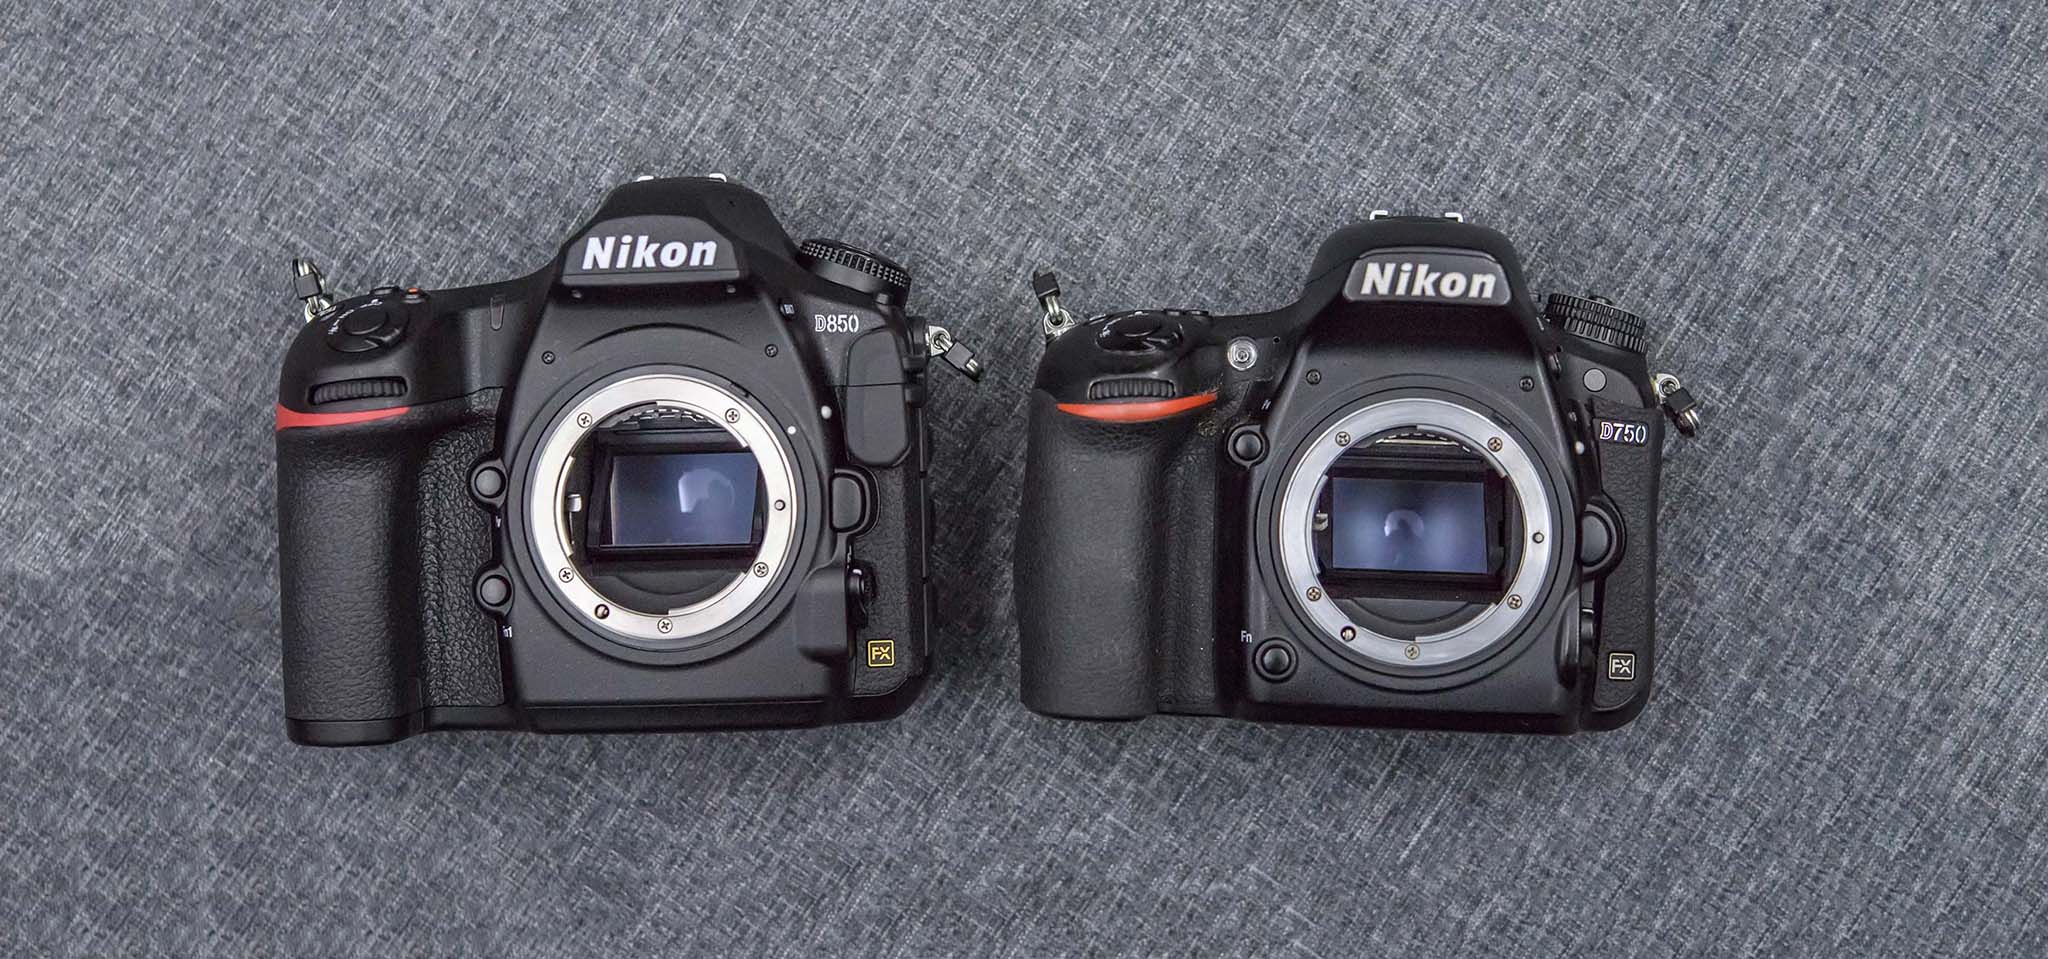 Nikon tuyên bố đứng đầu thị trường máy ảnh Full Frame cuối năm 2017 nhờ doanh số D850 và D750